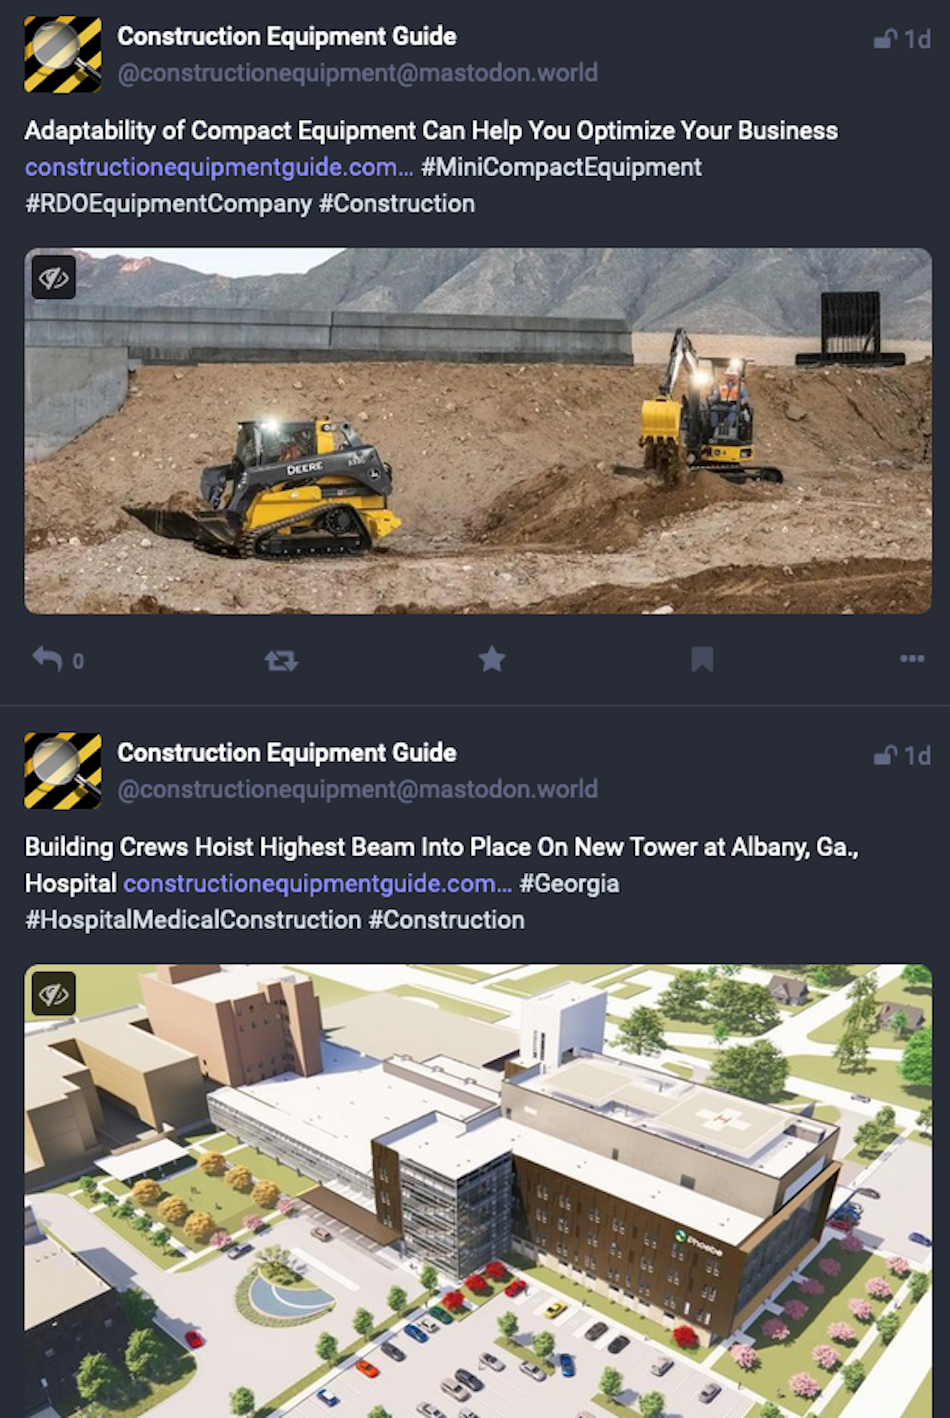 สองโพสต์บนแพลตฟอร์มโซเชียลมีเดีย Mastodon แสดงรายการข่าวอุตสาหกรรม Construction Equipment Guide ที่โปรโมตเรื่องราวข่าวจากเว็บไซต์ของพวกเขา